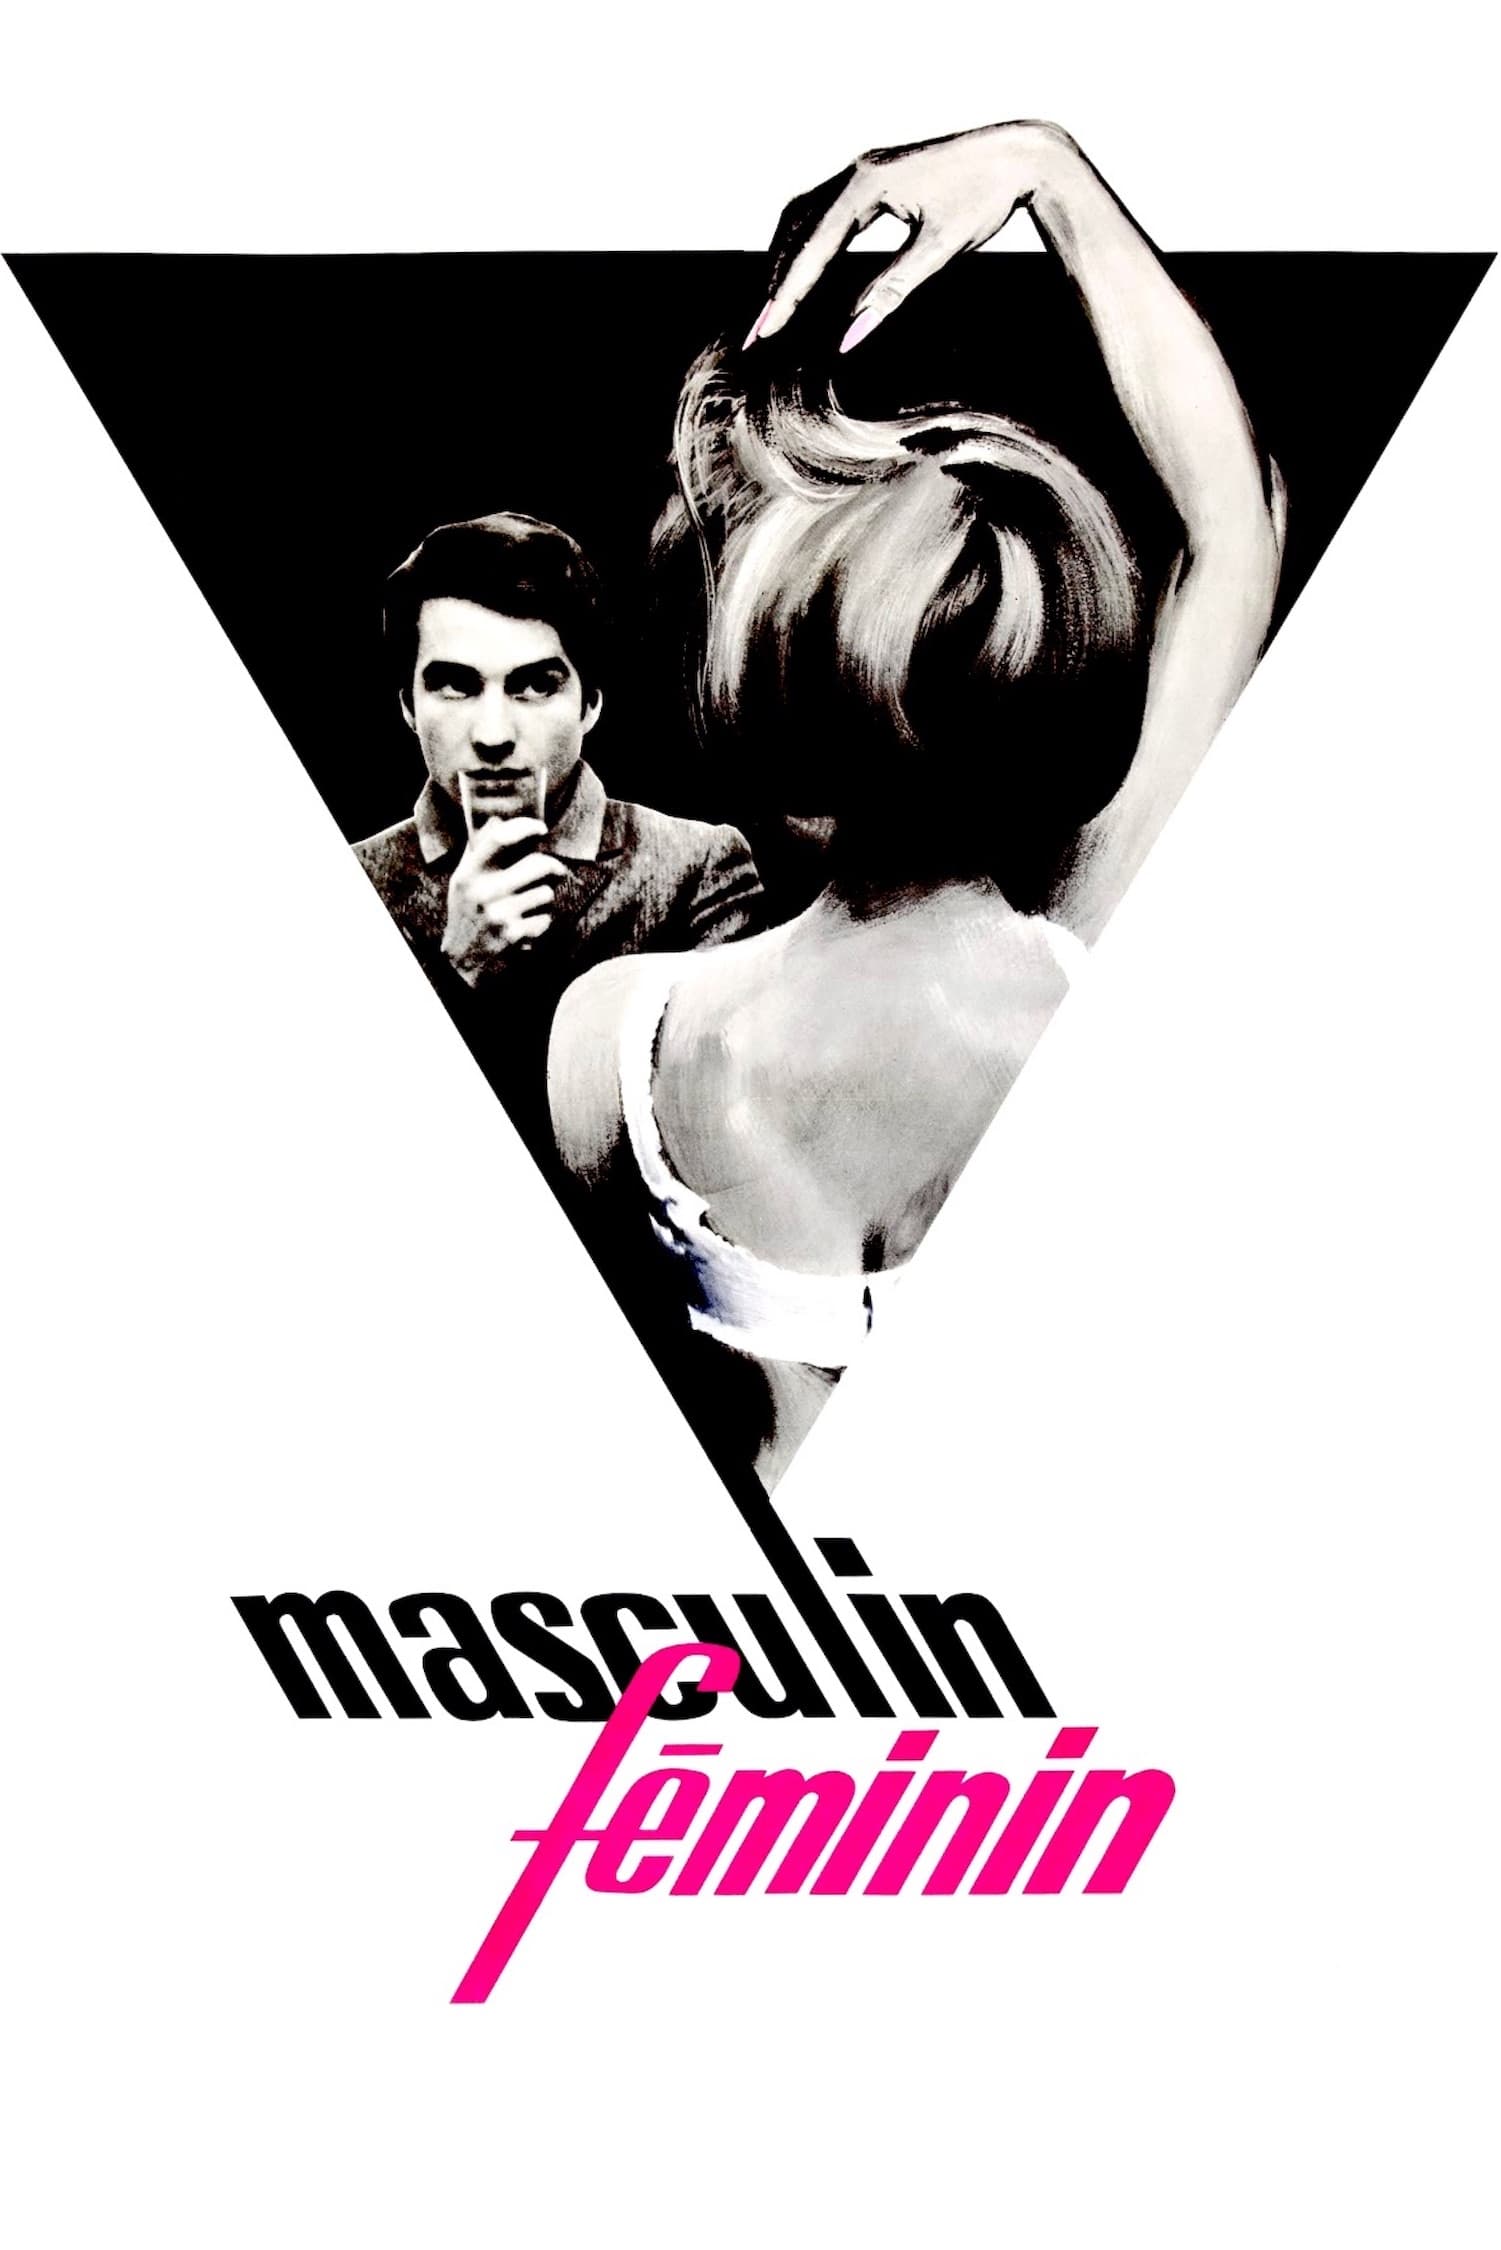 Masculino Feminino (1966)